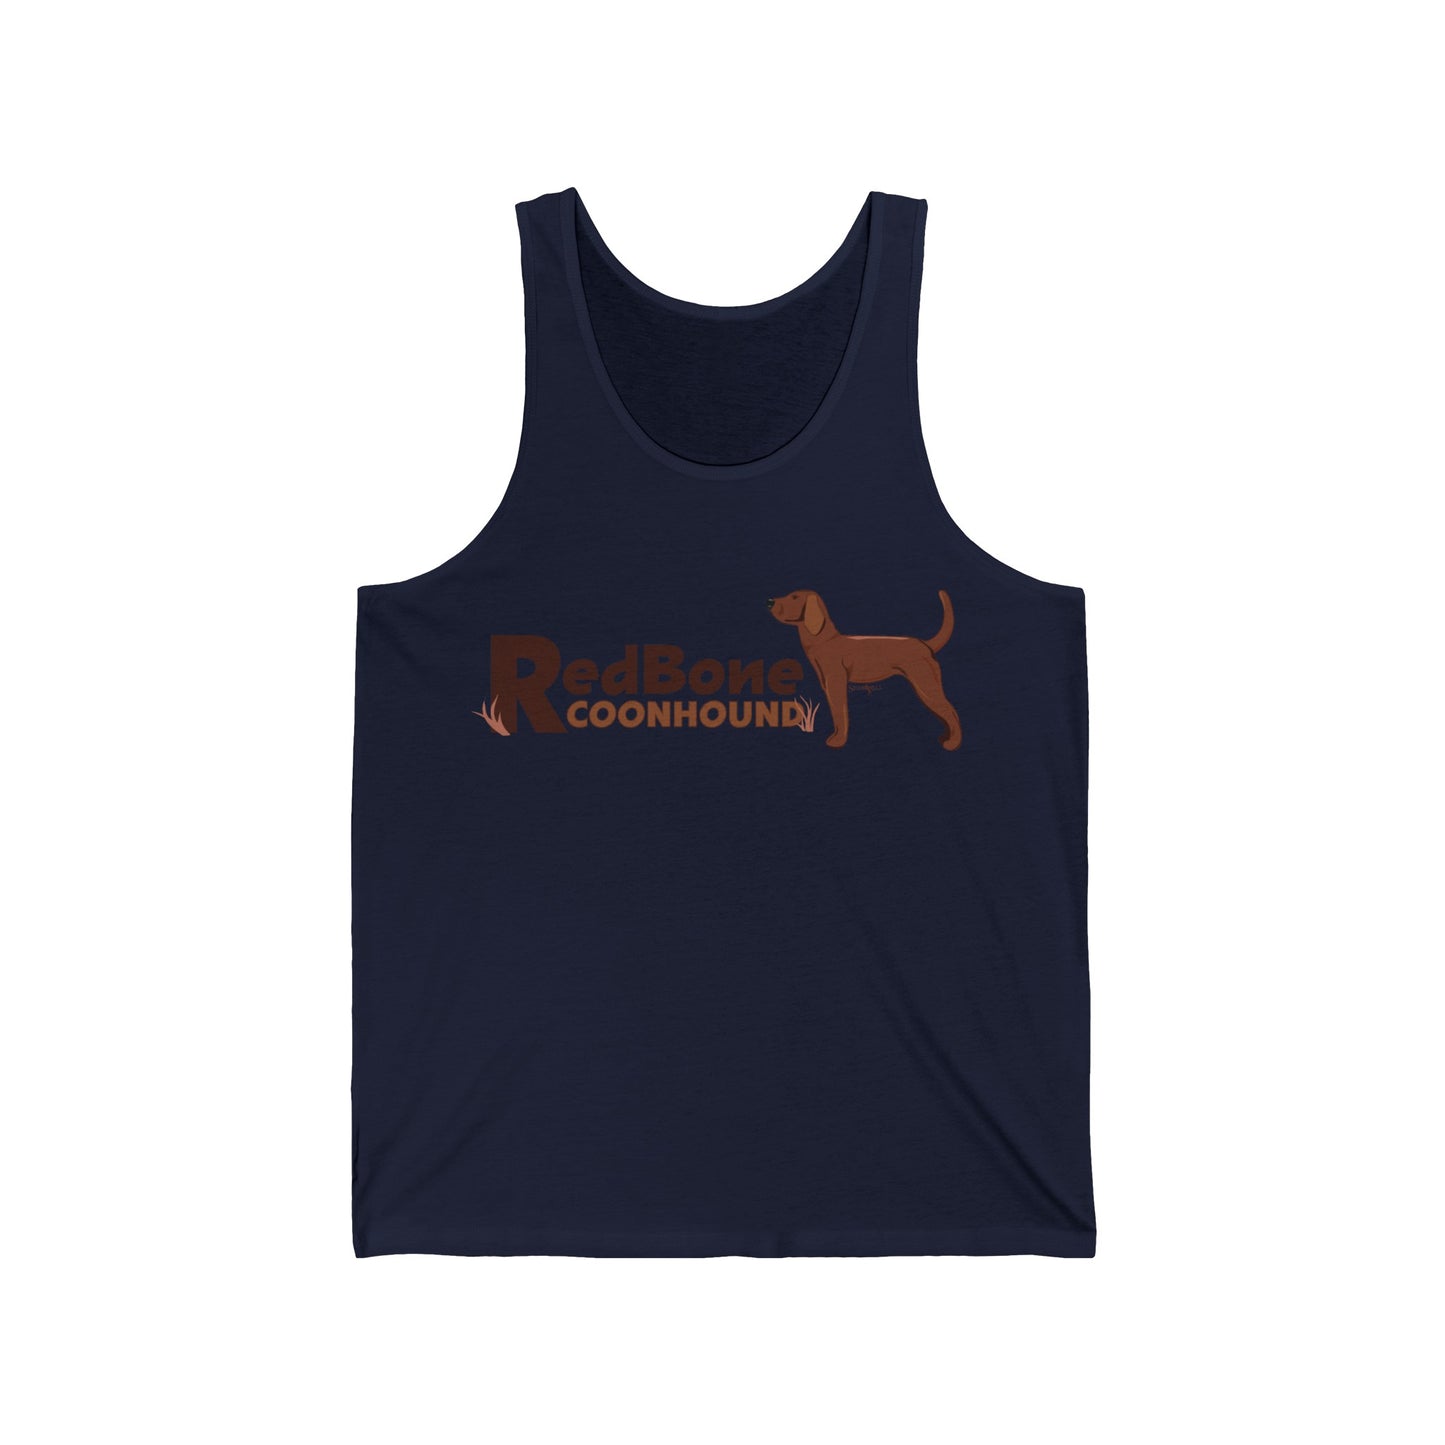 Redbone coonhound tank